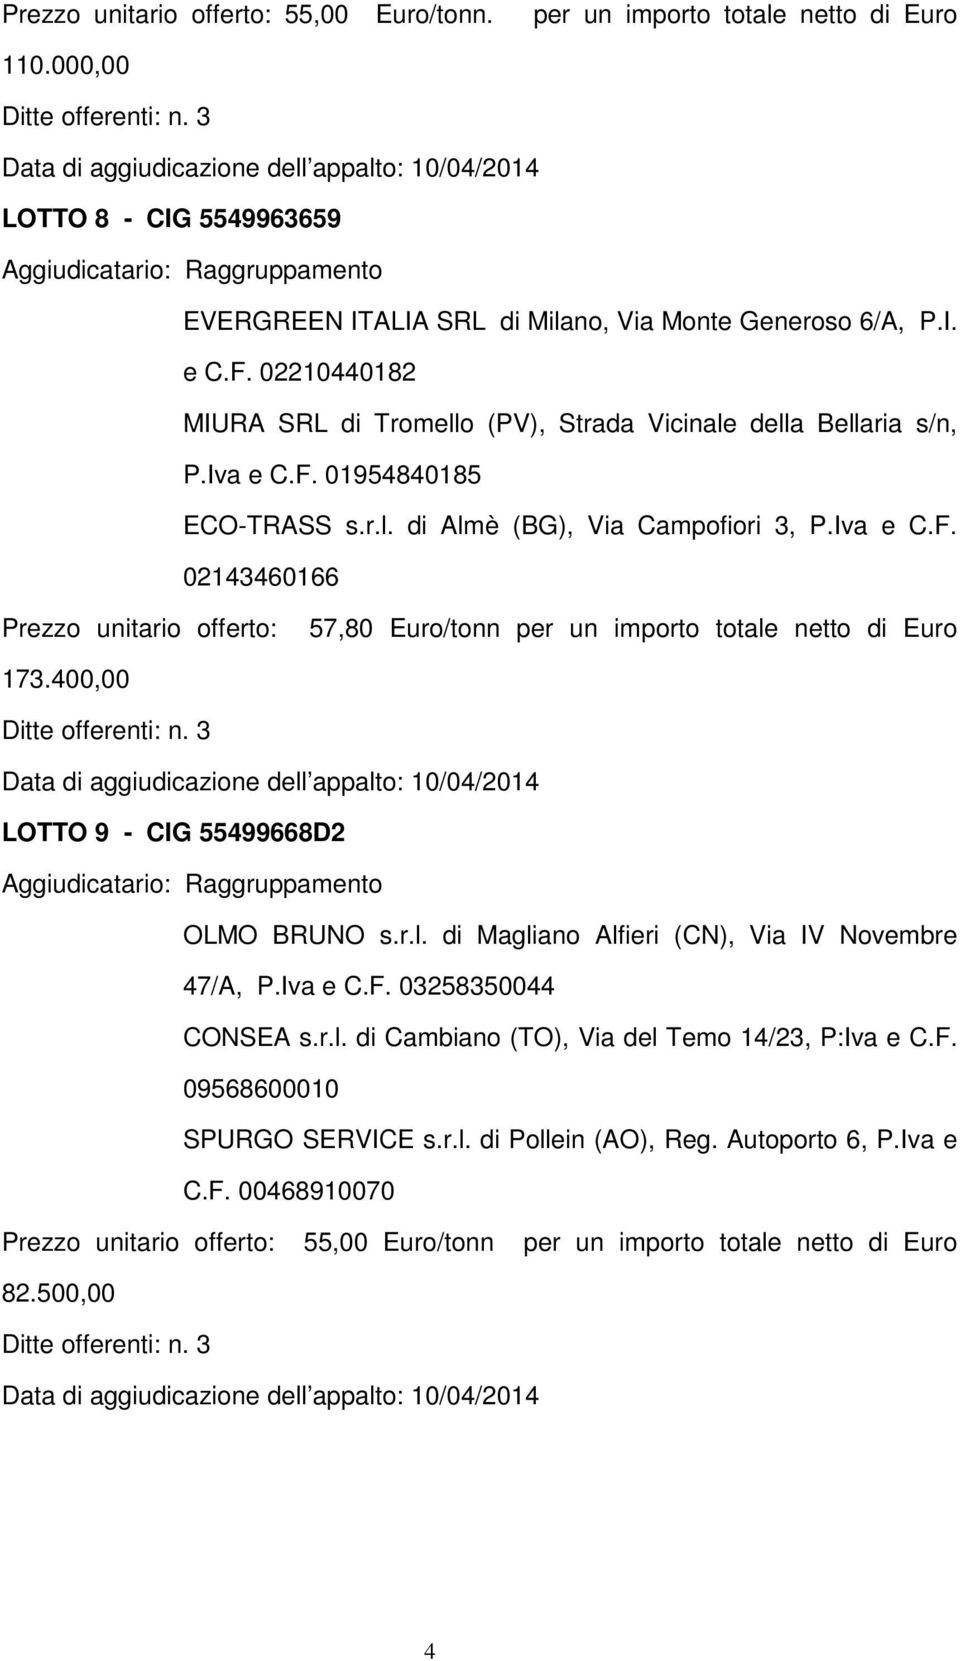 400,00 LOTTO 9 - CIG 55499668D2 OLMO BRUNO s.r.l. di Magliano Alfieri (CN), Via IV Novembre 47/A, P.Iva e C.F. 03258350044 CONSEA s.r.l. di Cambiano (TO), Via del Temo 14/23, P:Iva e C.F. 09568600010 SPURGO SERVICE s.